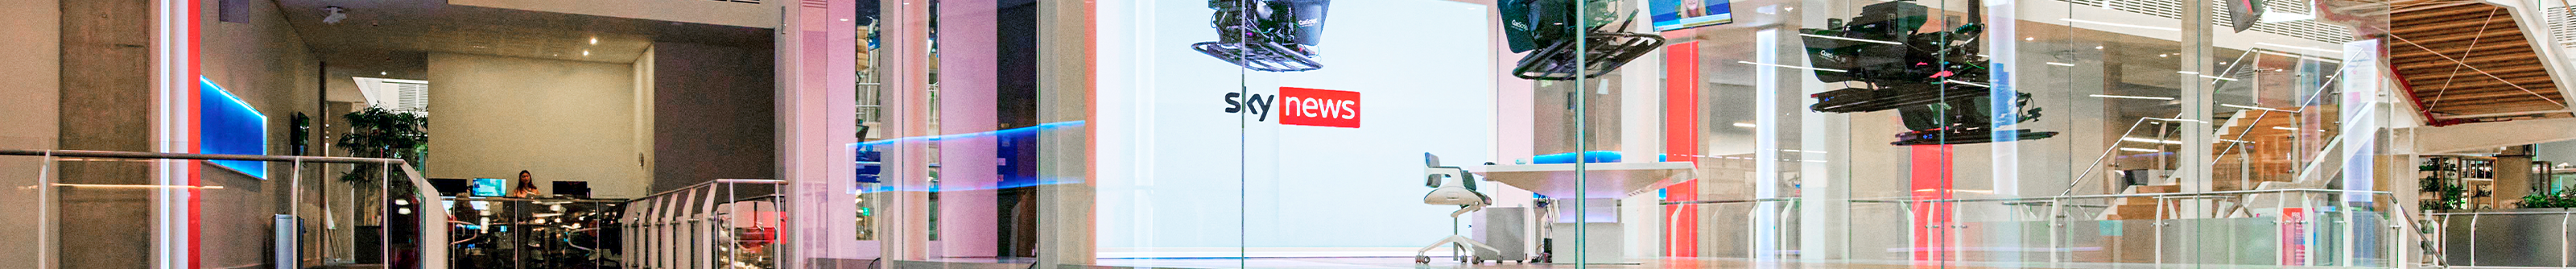 Sky News Design and Creative 的個人檔案橫幅